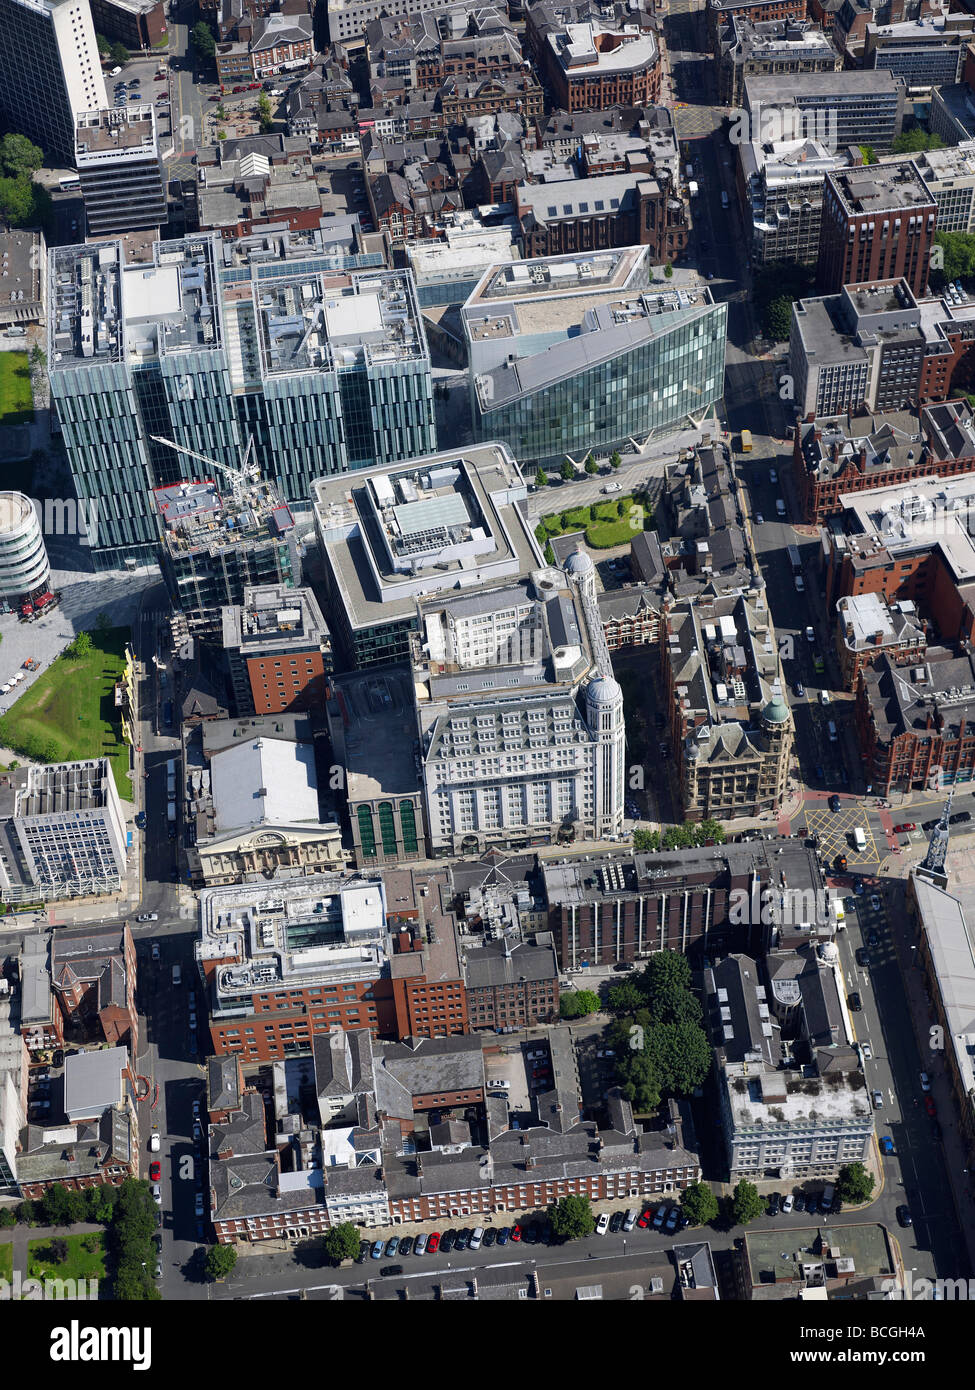 Il centro della città di Manchester, Quay Street e la zona business, dall'aria, luglio 2009, l'Inghilterra settentrionale Foto Stock